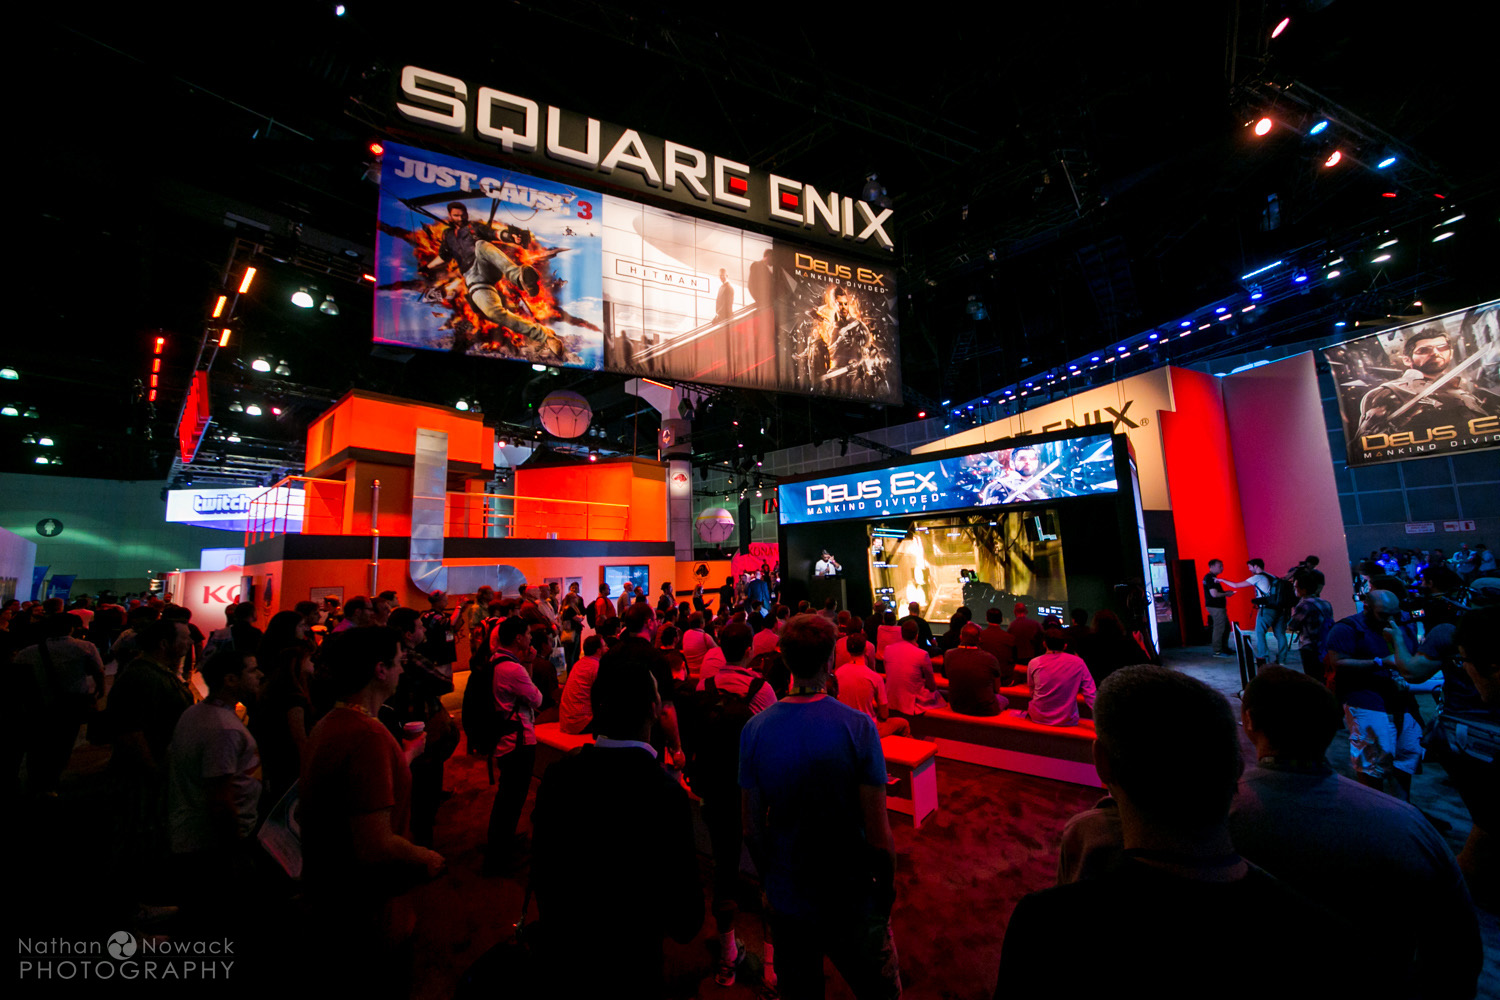 e3-2015-la-convention-center-expo-video-games-square-enix_0004